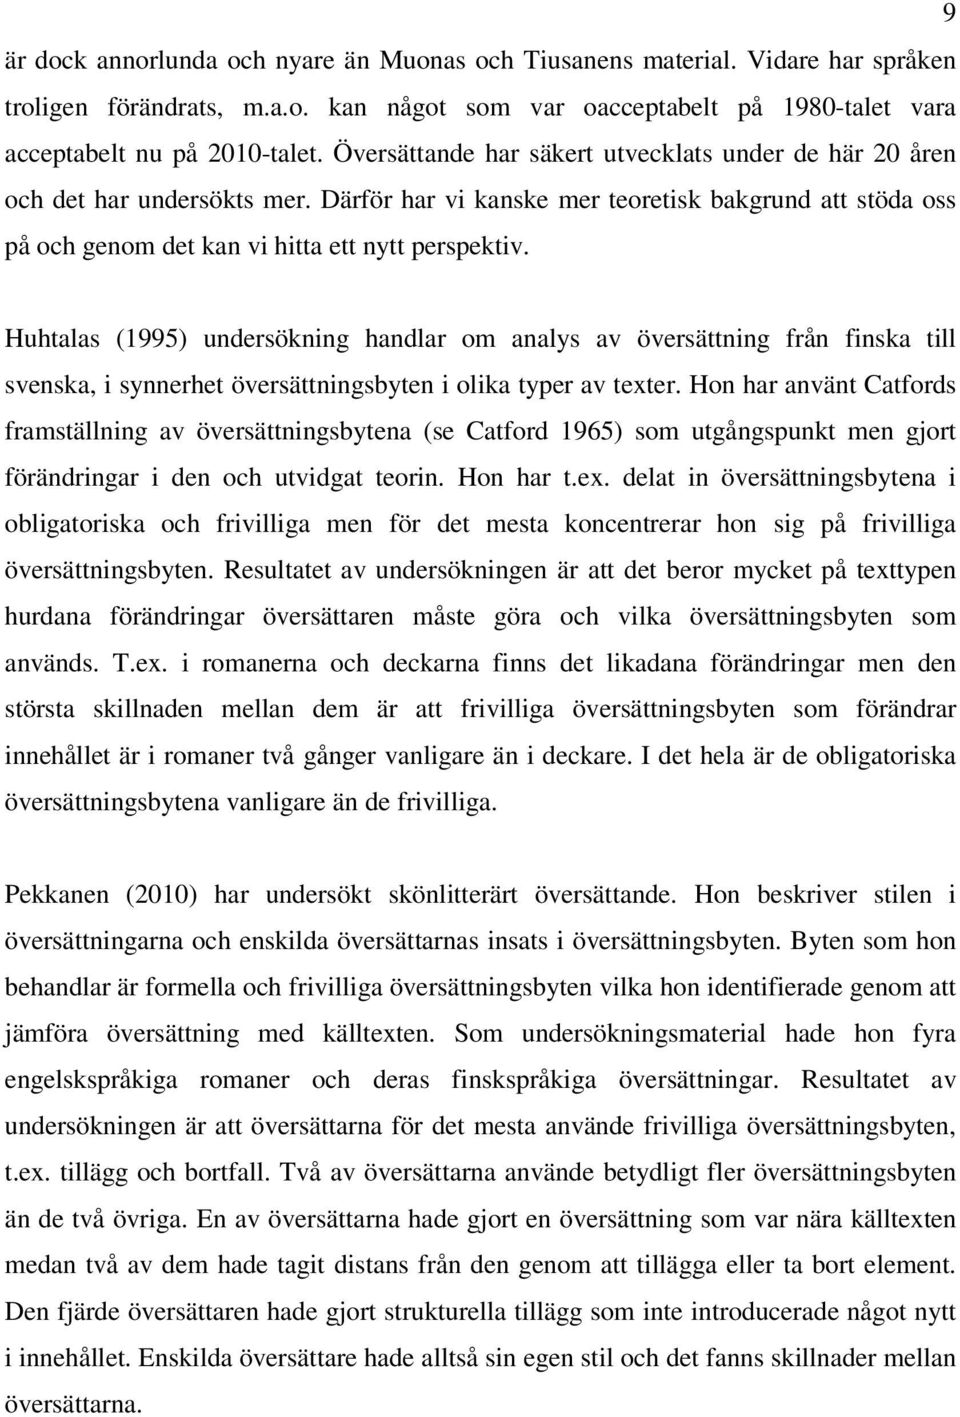 Huhtalas (1995) undersökning handlar om analys av översättning från finska till svenska, i synnerhet översättningsbyten i olika typer av texter.